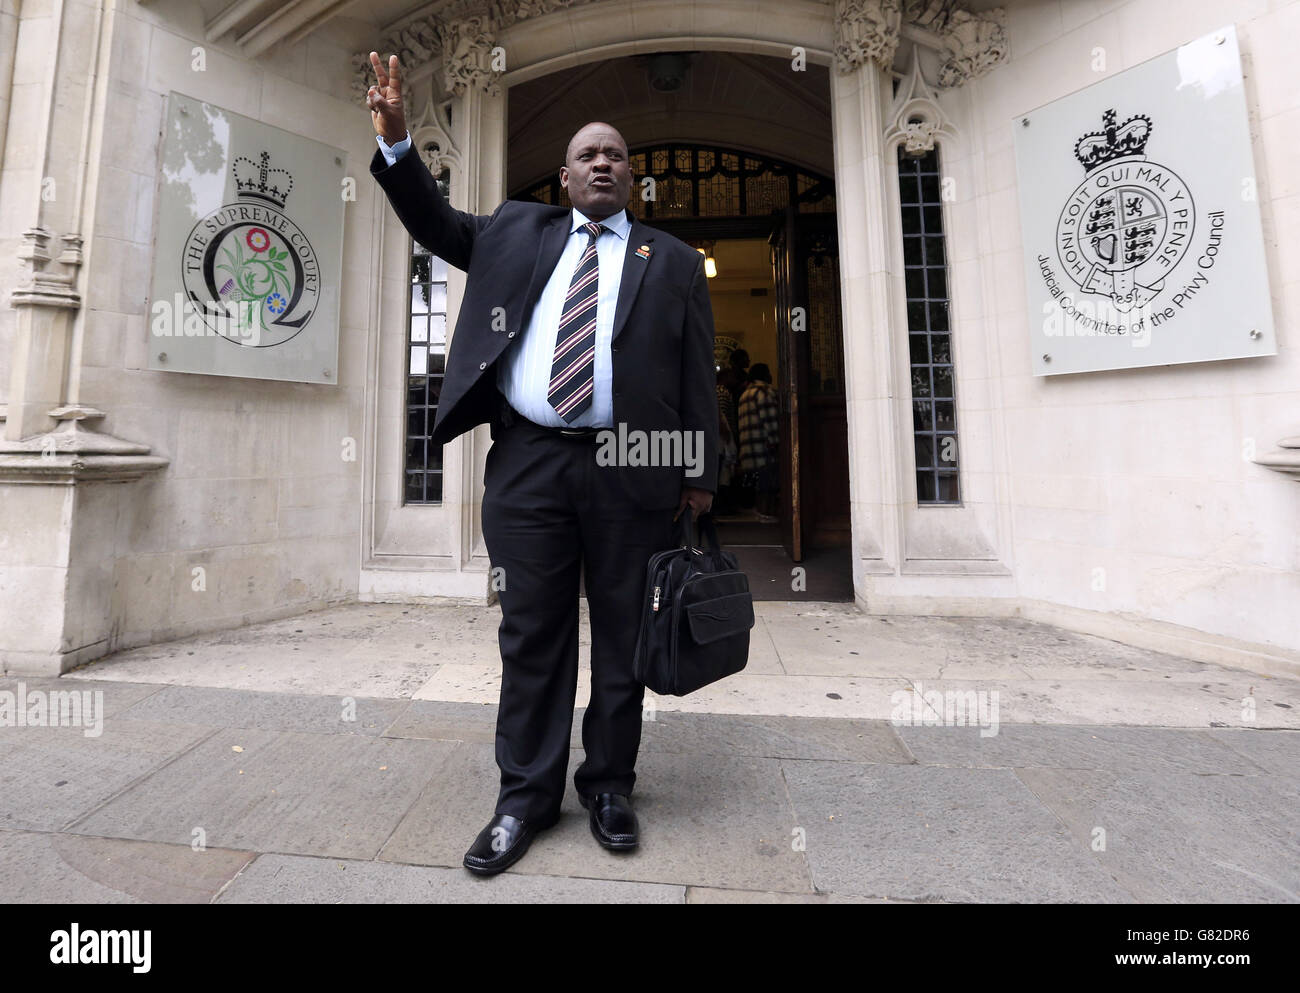 Louis Olivier Bancoult, leader del Chagos Refugee Group, arriva alla Corte Suprema di Londra, Come ex residenti delle isole Chagos sono sfidanti una decisione presa sei anni fa dalla Camera dei Lord che ha infranto le loro speranze di tornare a casa alle loro isole indigene nell'Oceano Indiano. Foto Stock